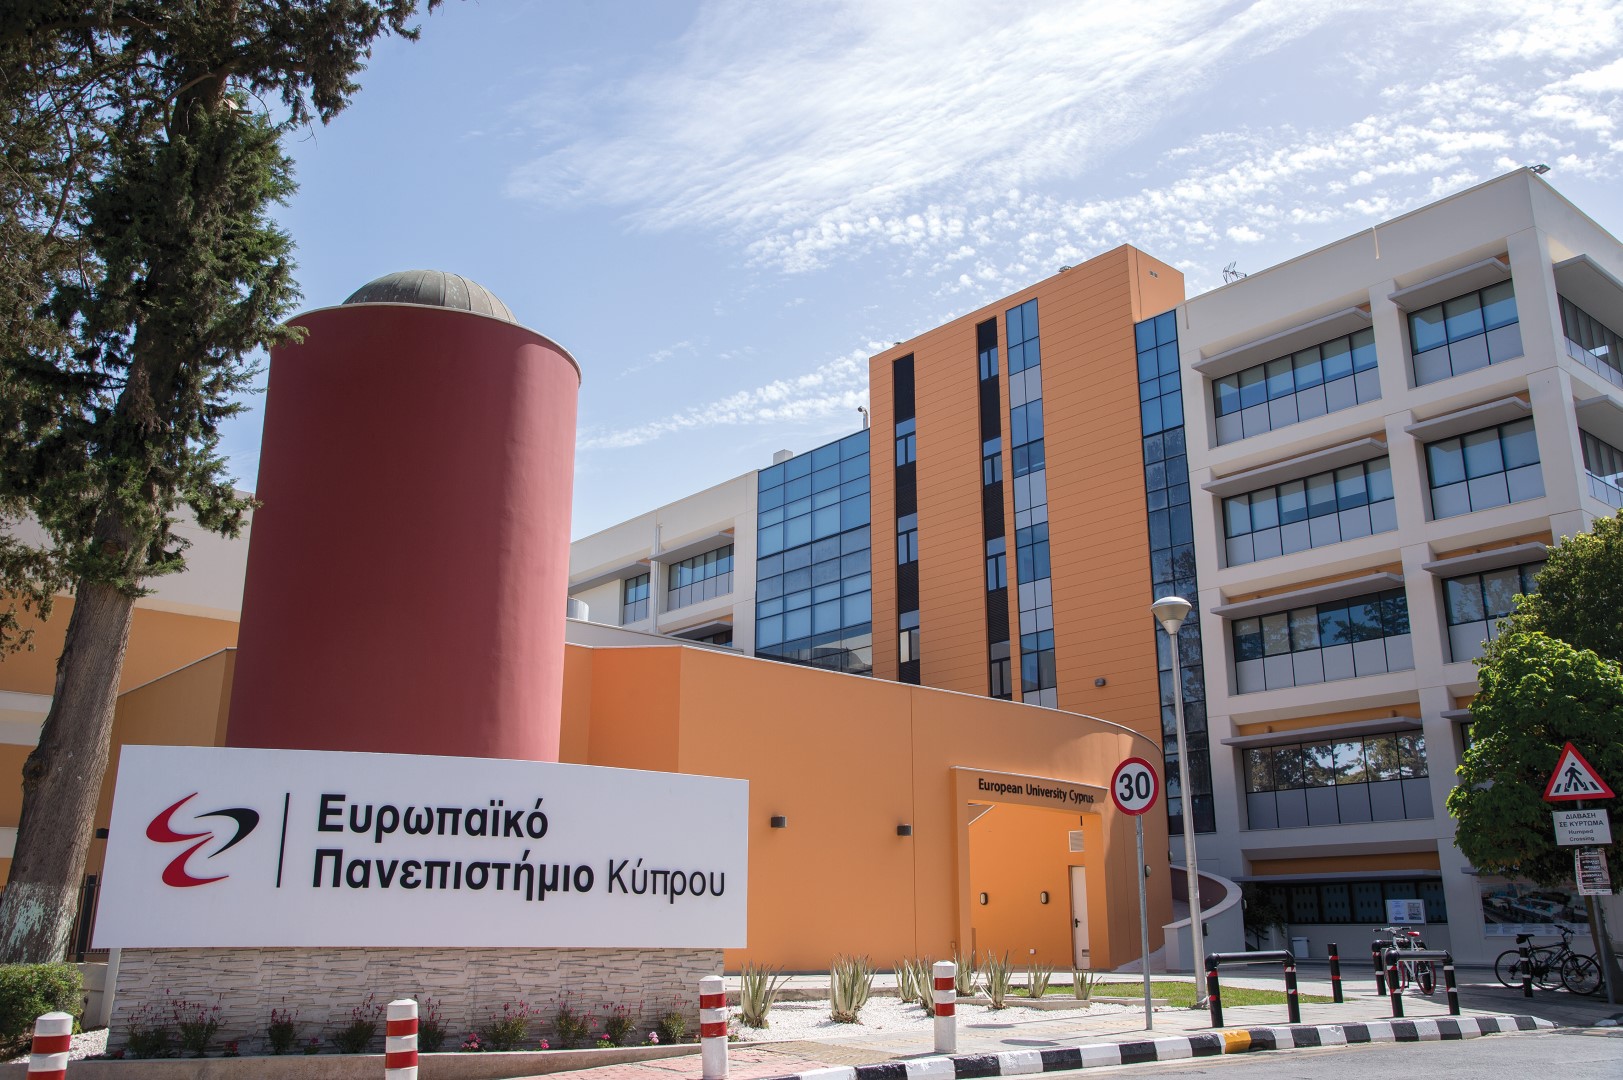 Μνημόνιο συνεργασίας μεταξύ Ευρωπαϊκού Πανεπιστημίου Κύπρου και Όμιλου ADAPTIT